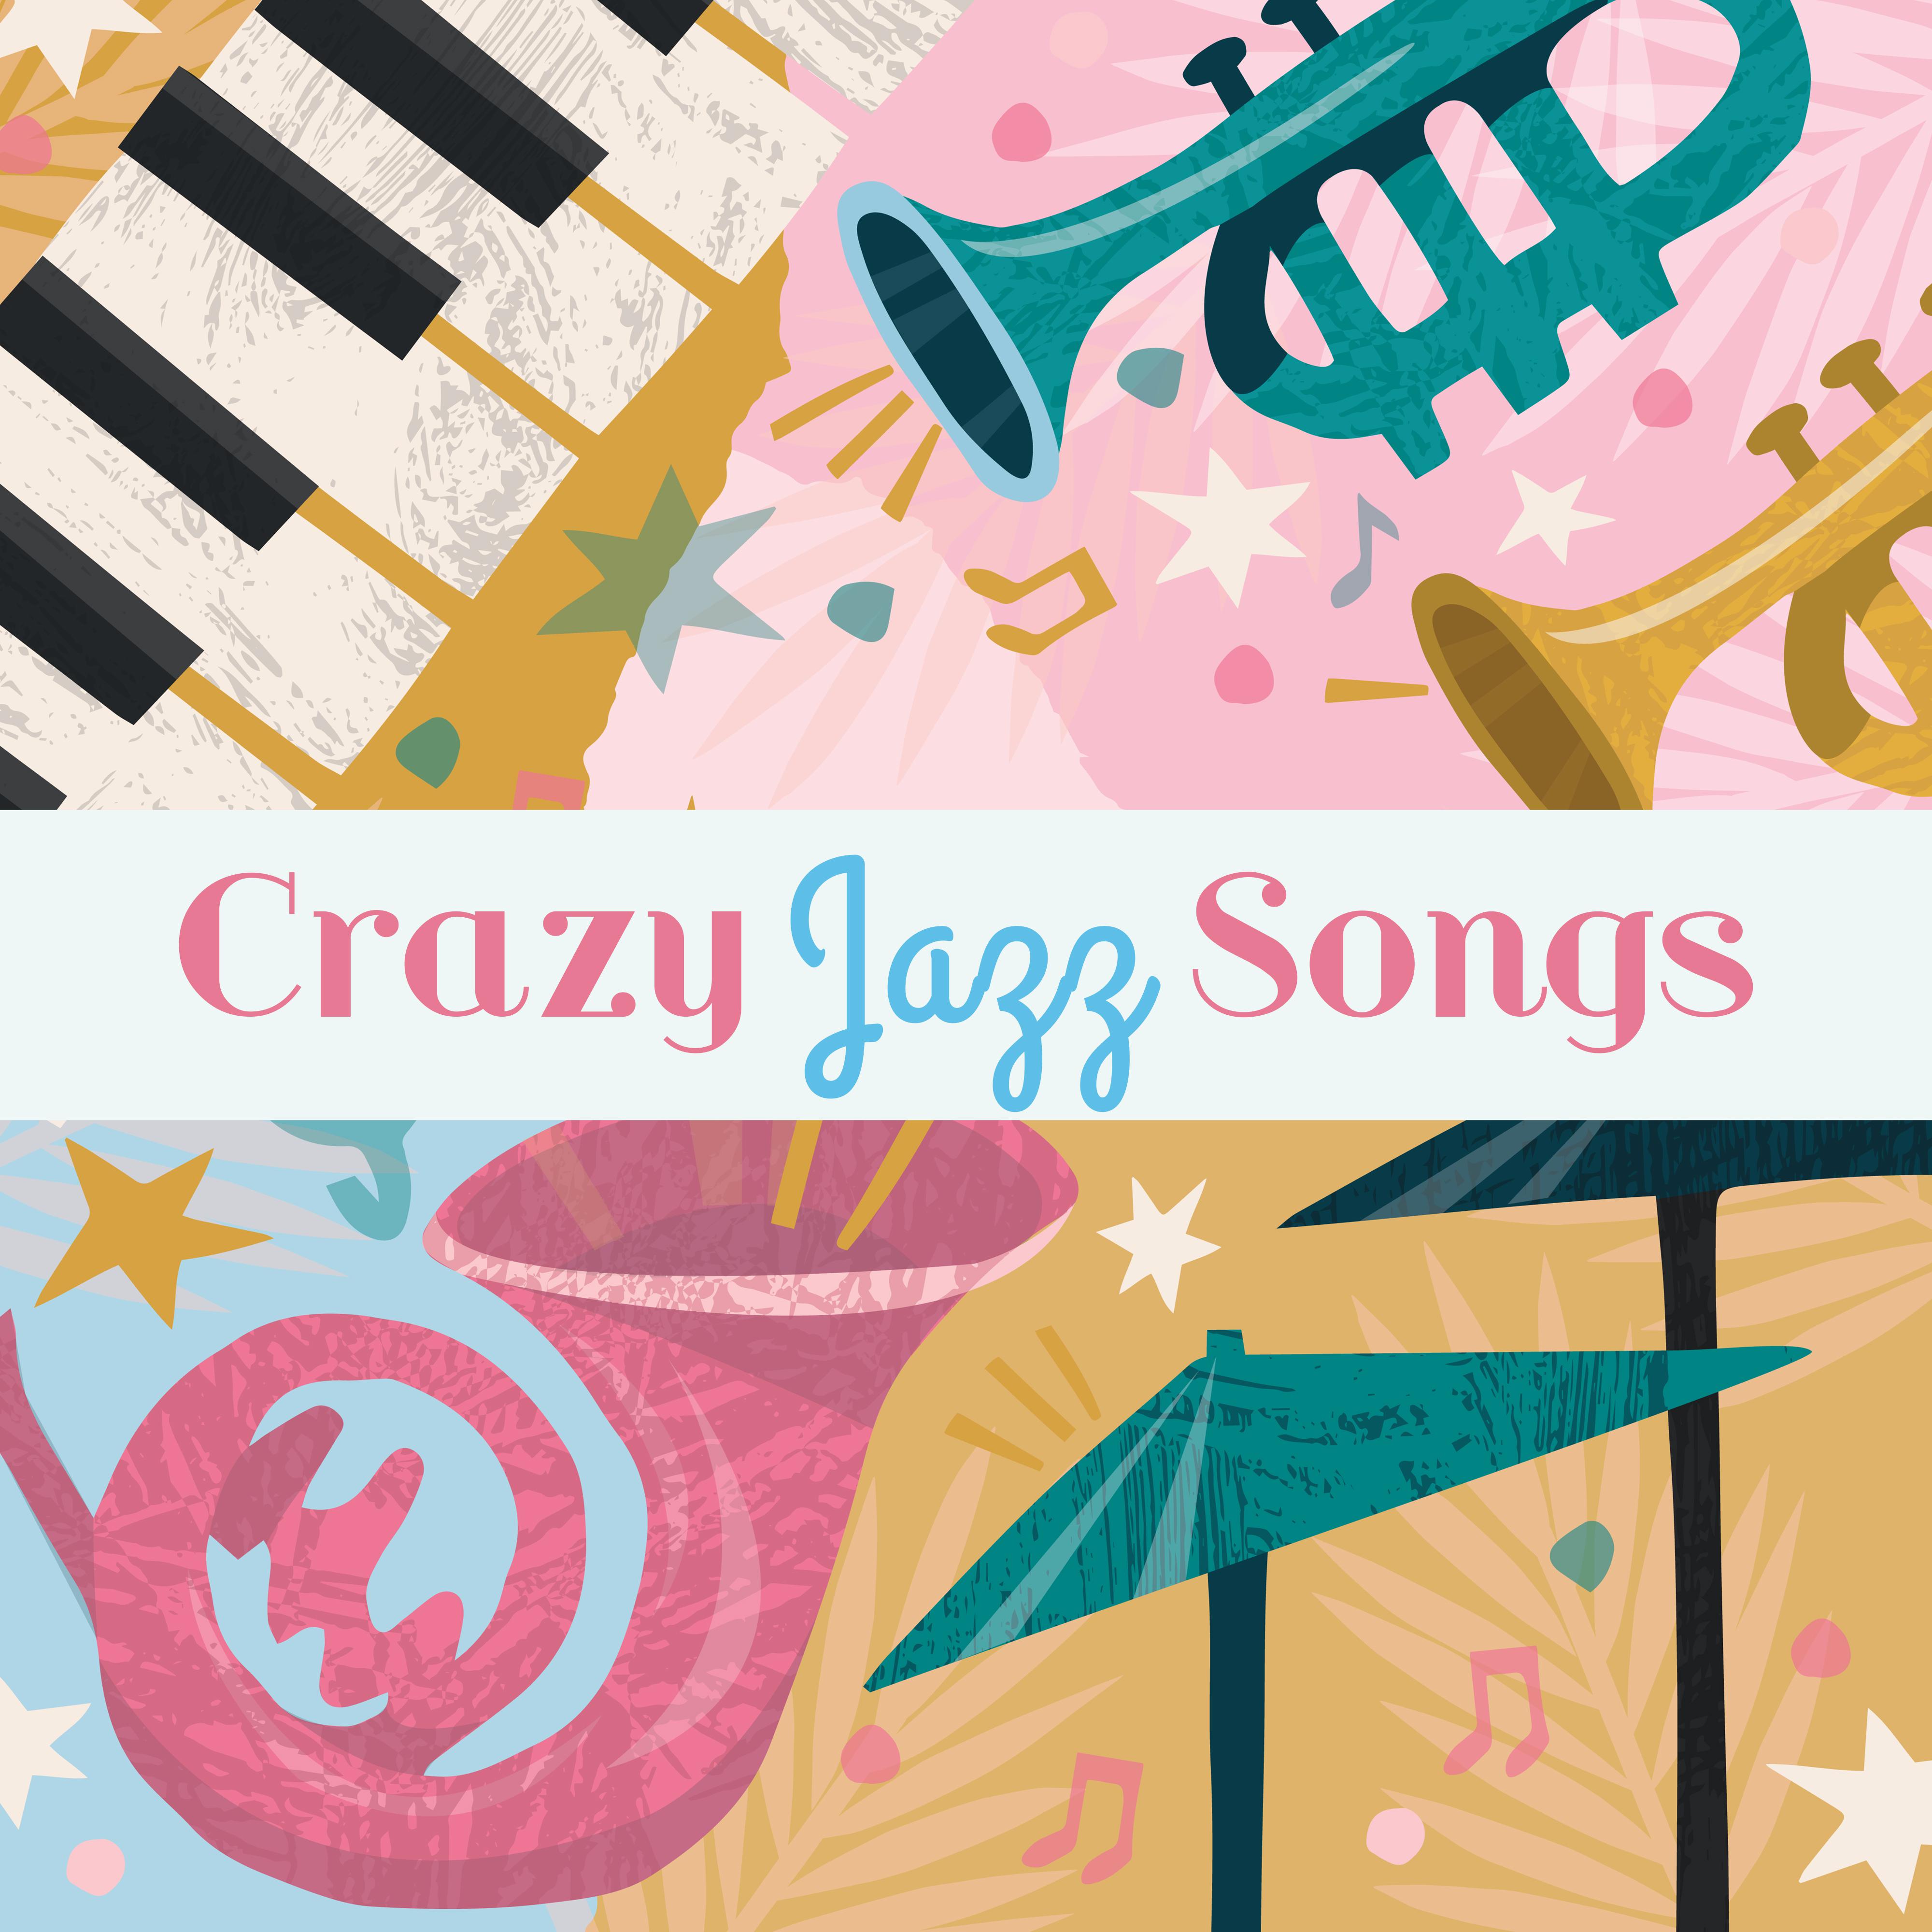 Crazy Jazz Songs